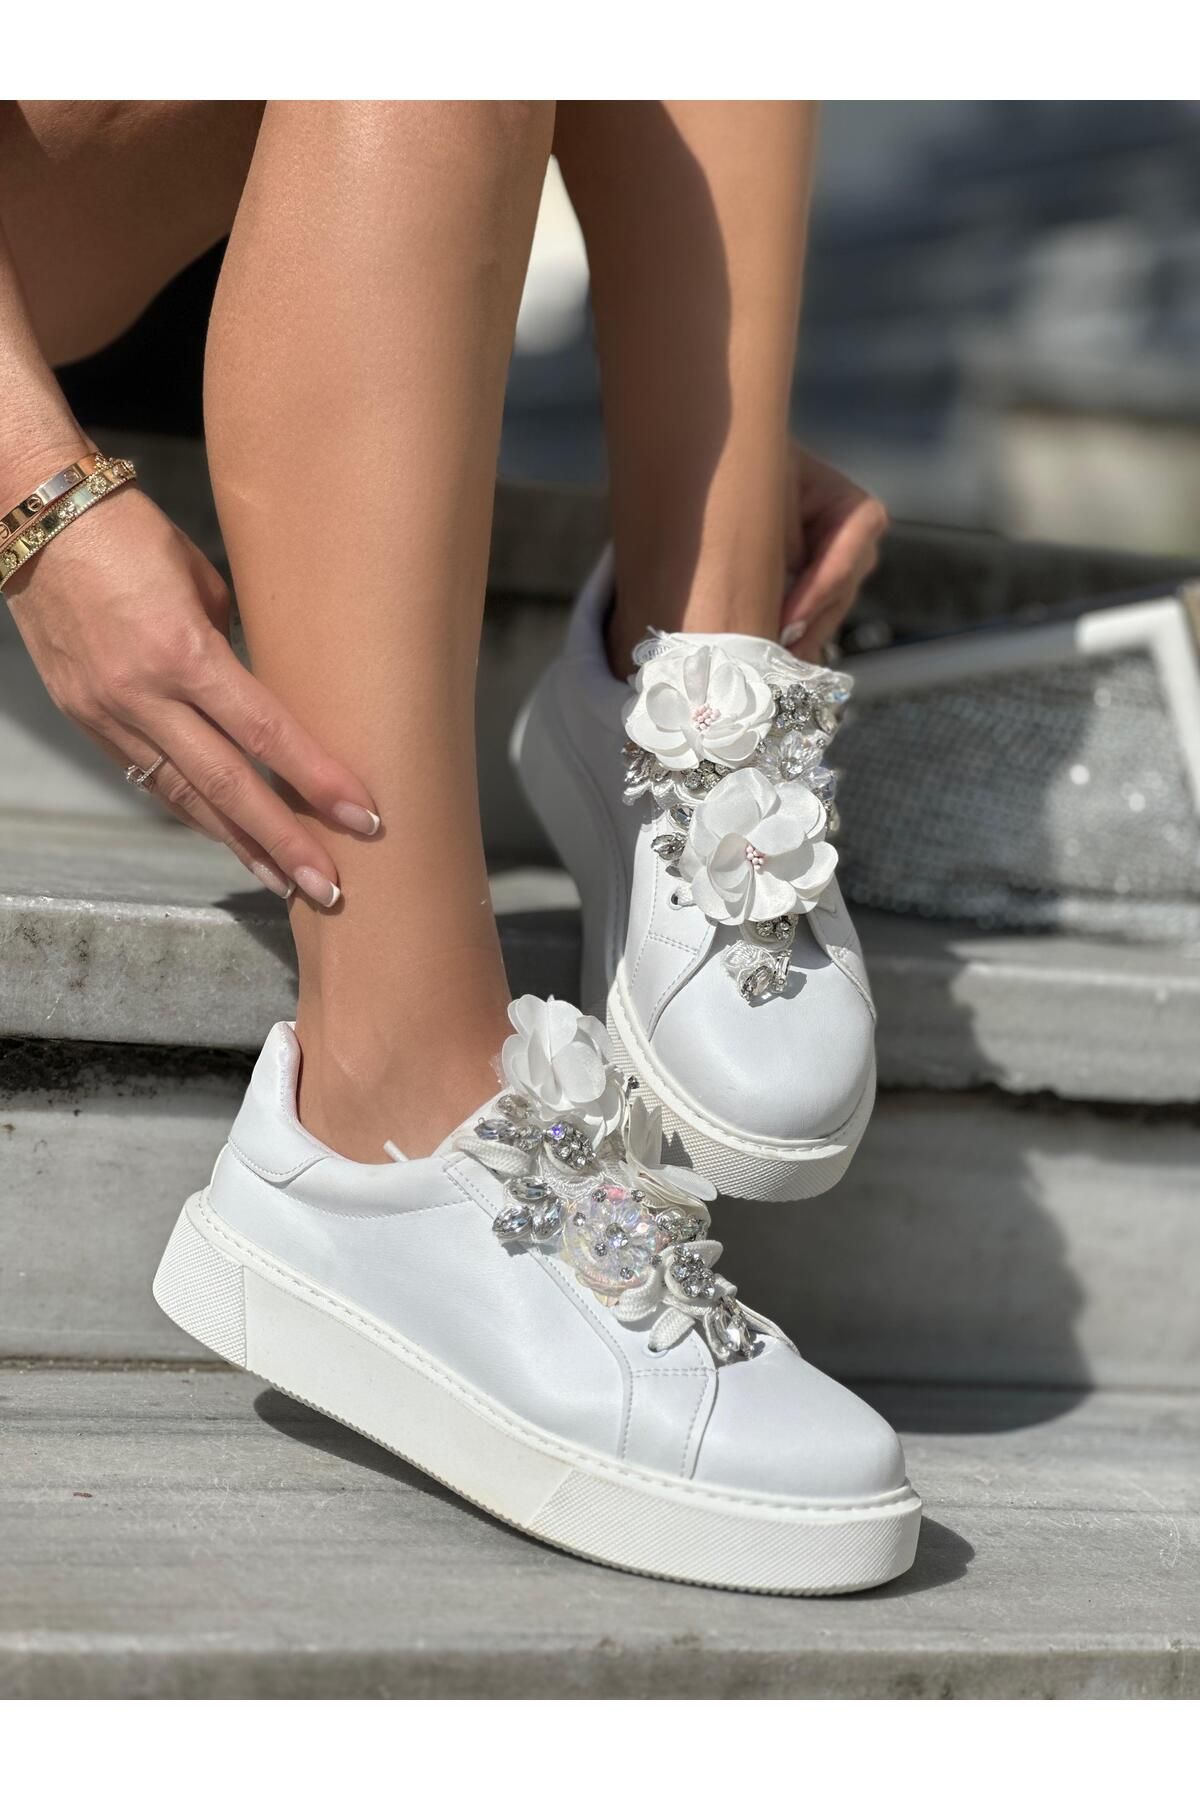 Giydim Gidiyor Flower Özel Tasarım Spor Ayakkabı Beyaz